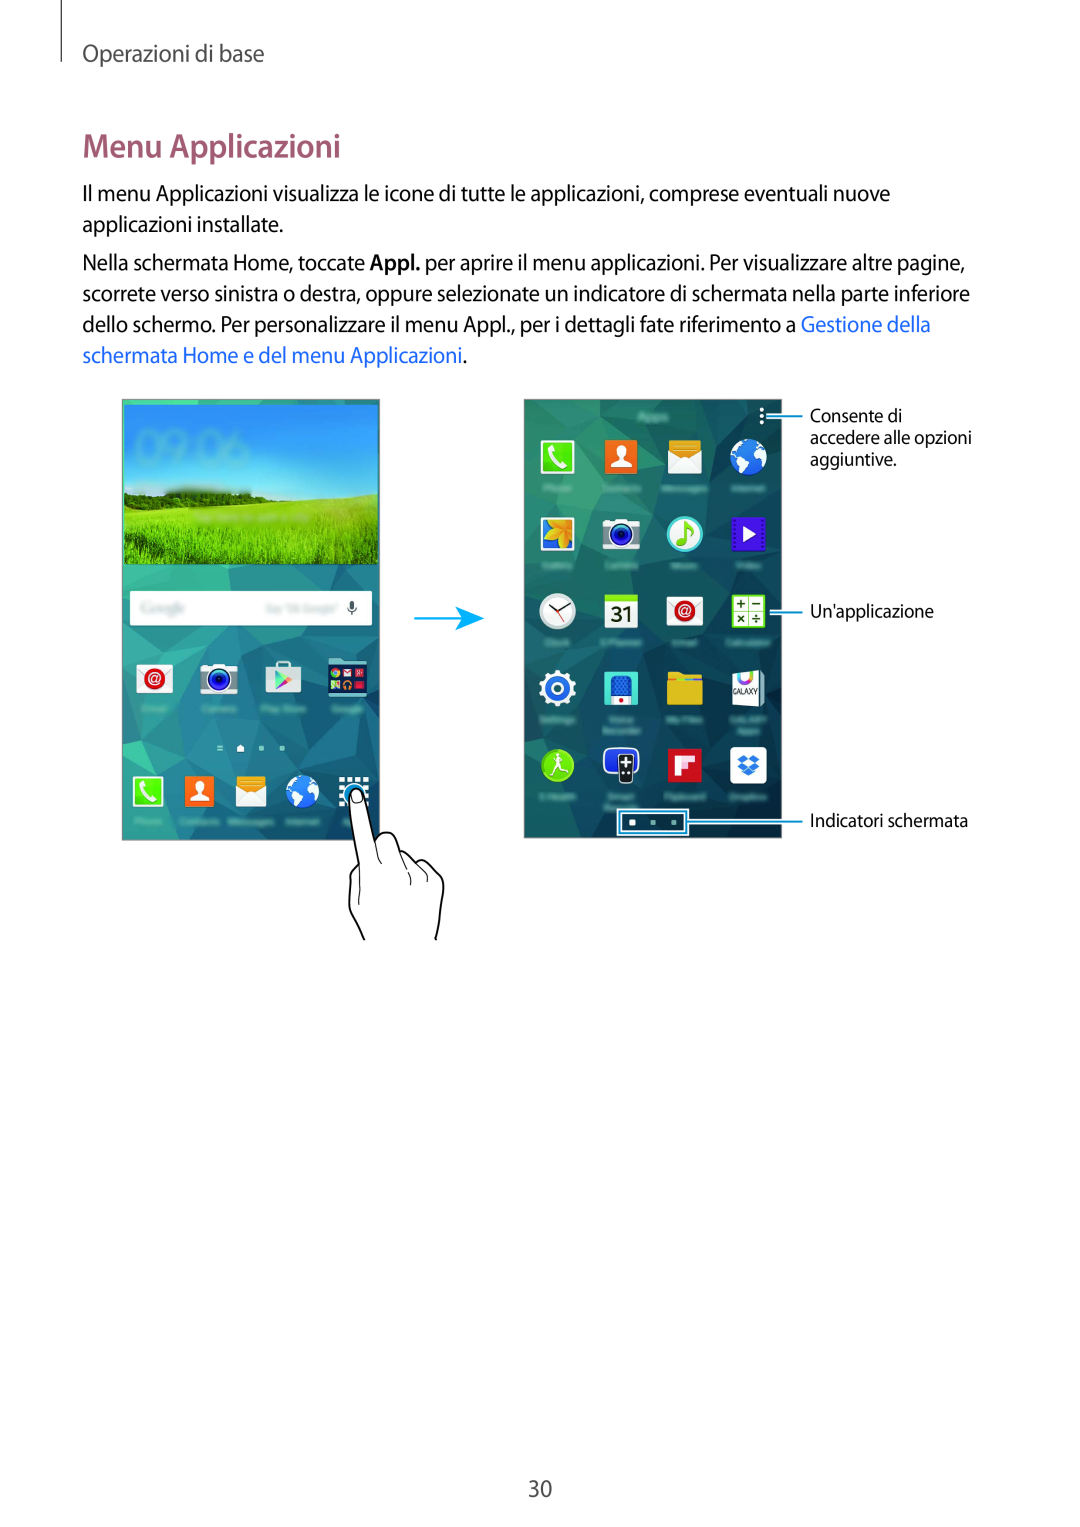 Samsung SM-G900FZKAWIN Menu Applicazioni, Operazioni di base, Consente di accedere alle opzioni aggiuntive Unapplicazione 